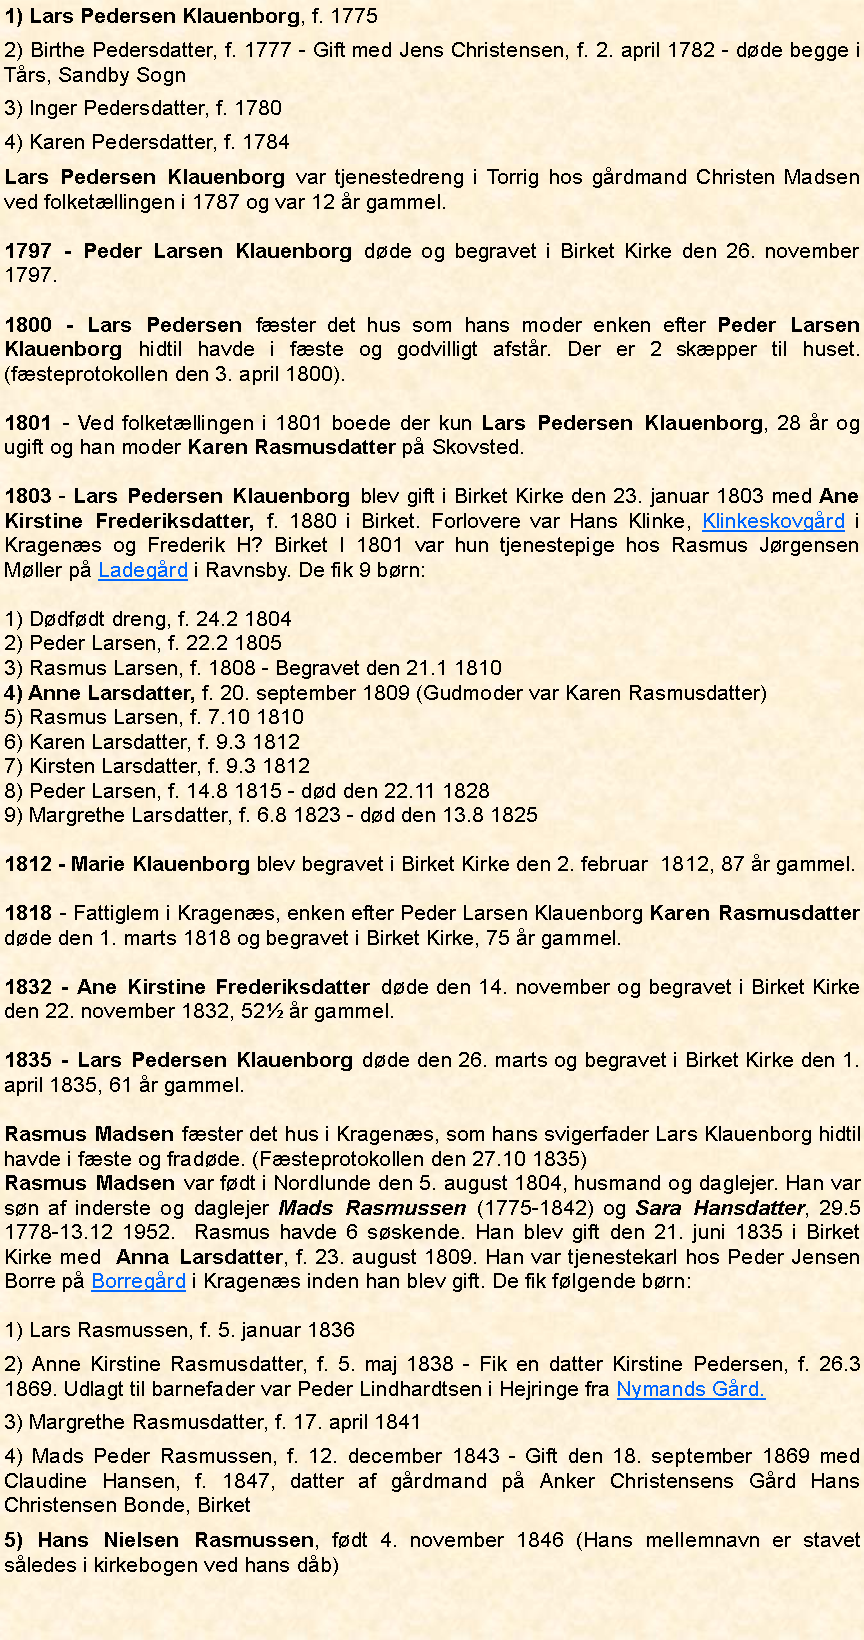 Tekstboks: 1) Lars Pedersen Klauenborg, f. 17752) Birthe Pedersdatter, f. 1777 - Gift med Jens Christensen, f. 2. april 1782 - døde begge i Tårs, Sandby Sogn3) Inger Pedersdatter, f. 17804) Karen Pedersdatter, f. 1784Lars Pedersen Klauenborg var tjenestedreng i Torrig hos gårdmand Christen Madsen ved folketællingen i 1787 og var 12 år gammel. 1797 - Peder Larsen Klauenborg døde og begravet i Birket Kirke den 26. november 1797.1800 - Lars Pedersen fæster det hus som hans moder enken efter Peder Larsen Klauenborg hidtil havde i fæste og godvilligt afstår. Der er 2 skæpper til huset. (fæsteprotokollen den 3. april 1800).1801 - Ved folketællingen i 1801 boede der kun Lars Pedersen Klauenborg, 28 år og ugift og han moder Karen Rasmusdatter på Skovsted. 1803 - Lars Pedersen Klauenborg blev gift i Birket Kirke den 23. januar 1803 med Ane Kirstine Frederiksdatter, f. 1880 i Birket. Forlovere var Hans Klinke, Klinkeskovgård i Kragenæs og Frederik H? Birket I 1801 var hun tjenestepige hos Rasmus Jørgensen Møller på Ladegård i Ravnsby. De fik 9 børn: 1) Dødfødt dreng, f. 24.2 18042) Peder Larsen, f. 22.2 18053) Rasmus Larsen, f. 1808 - Begravet den 21.1 18104) Anne Larsdatter, f. 20. september 1809 (Gudmoder var Karen Rasmusdatter)5) Rasmus Larsen, f. 7.10 18106) Karen Larsdatter, f. 9.3 18127) Kirsten Larsdatter, f. 9.3 18128) Peder Larsen, f. 14.8 1815 - død den 22.11 18289) Margrethe Larsdatter, f. 6.8 1823 - død den 13.8 18251812 - Marie Klauenborg blev begravet i Birket Kirke den 2. februar  1812, 87 år gammel.1818 - Fattiglem i Kragenæs, enken efter Peder Larsen Klauenborg Karen Rasmusdatter døde den 1. marts 1818 og begravet i Birket Kirke, 75 år gammel.1832 - Ane Kirstine Frederiksdatter døde den 14. november og begravet i Birket Kirke den 22. november 1832, 52½ år gammel. 1835 - Lars Pedersen Klauenborg døde den 26. marts og begravet i Birket Kirke den 1. april 1835, 61 år gammel. Rasmus Madsen fæster det hus i Kragenæs, som hans svigerfader Lars Klauenborg hidtil havde i fæste og fradøde. (Fæsteprotokollen den 27.10 1835)Rasmus Madsen var født i Nordlunde den 5. august 1804, husmand og daglejer. Han var søn af inderste og daglejer Mads Rasmussen (1775-1842) og Sara Hansdatter, 29.5 1778-13.12 1952.  Rasmus havde 6 søskende. Han blev gift den 21. juni 1835 i Birket Kirke med  Anna Larsdatter, f. 23. august 1809. Han var tjenestekarl hos Peder Jensen Borre på Borregård i Kragenæs inden han blev gift. De fik følgende børn:1) Lars Rasmussen, f. 5. januar 18362) Anne Kirstine Rasmusdatter, f. 5. maj 1838 - Fik en datter Kirstine Pedersen, f. 26.3 1869. Udlagt til barnefader var Peder Lindhardtsen i Hejringe fra Nymands Gård.3) Margrethe Rasmusdatter, f. 17. april 18414) Mads Peder Rasmussen, f. 12. december 1843 - Gift den 18. september 1869 med Claudine Hansen, f. 1847, datter af gårdmand på Anker Christensens Gård Hans Christensen Bonde, Birket5) Hans Nielsen Rasmussen, født 4. november 1846 (Hans mellemnavn er stavet således i kirkebogen ved hans dåb)